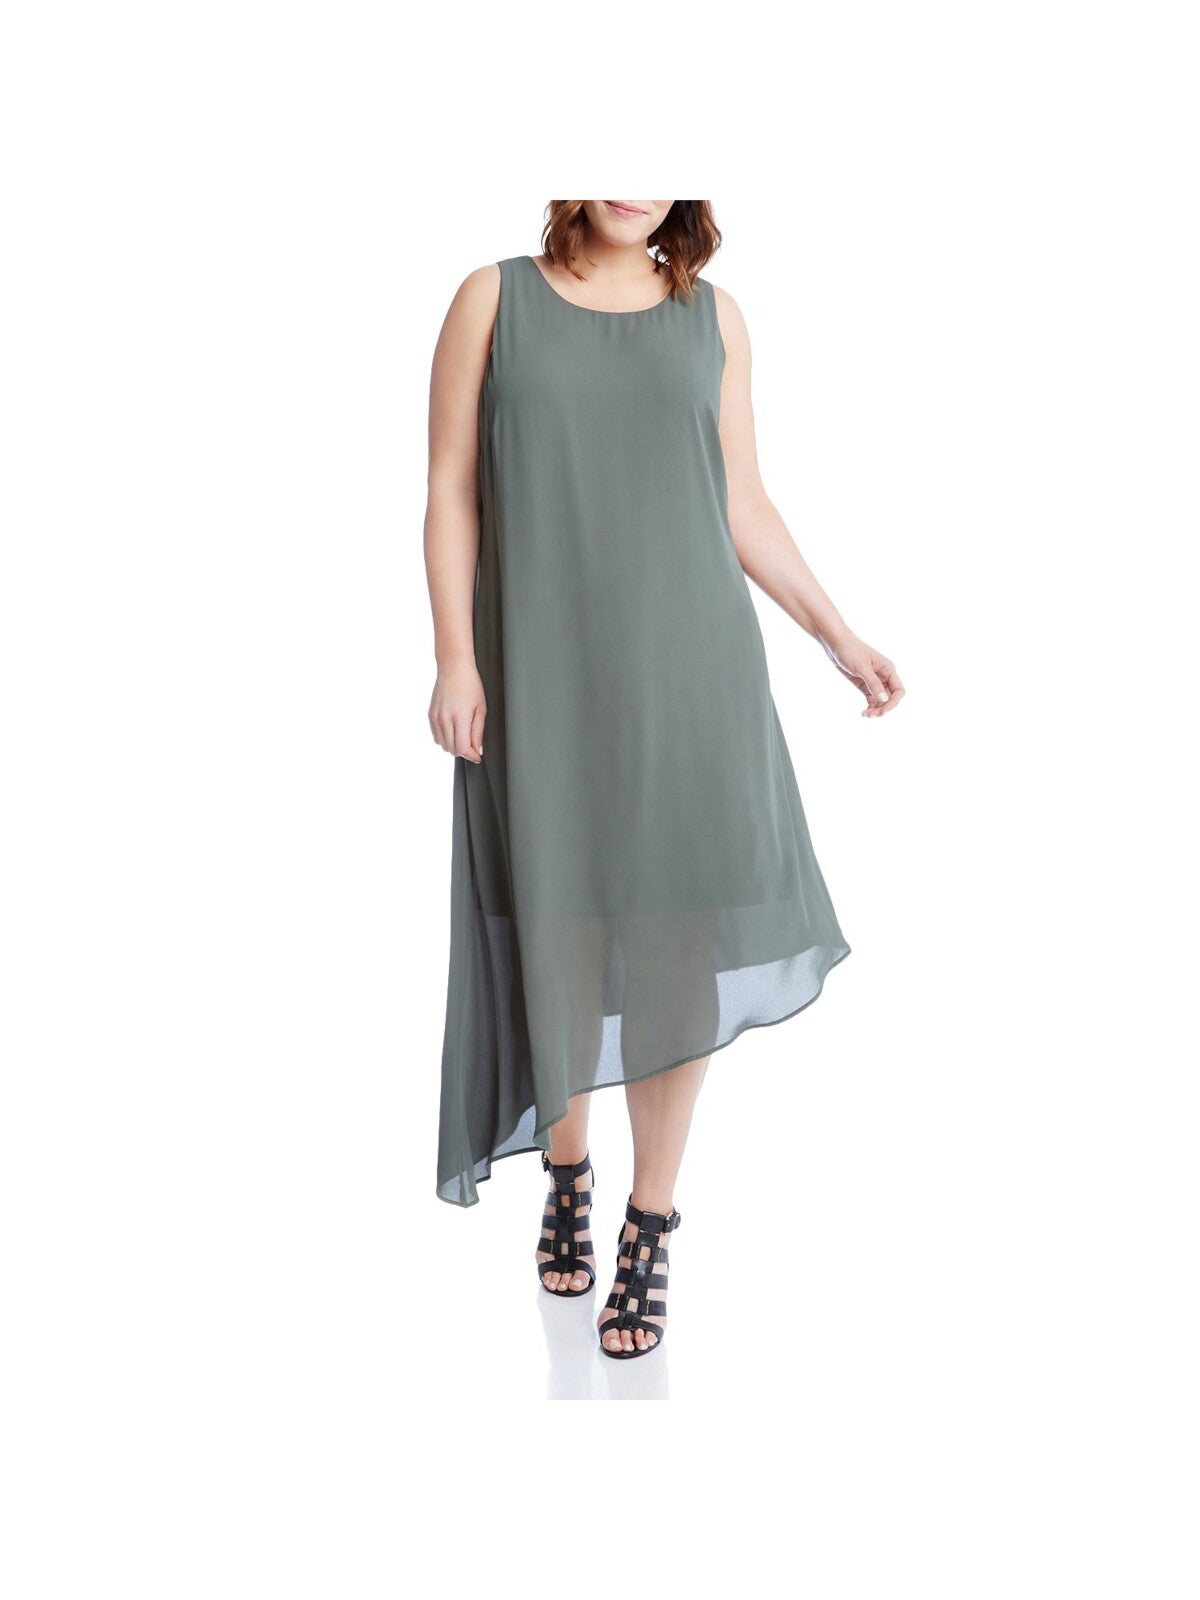 KAREN KANE Womens Zippered Sheer Asymmetrical Overlay Lined Sleeveless Round Neck Midi Shift Dress